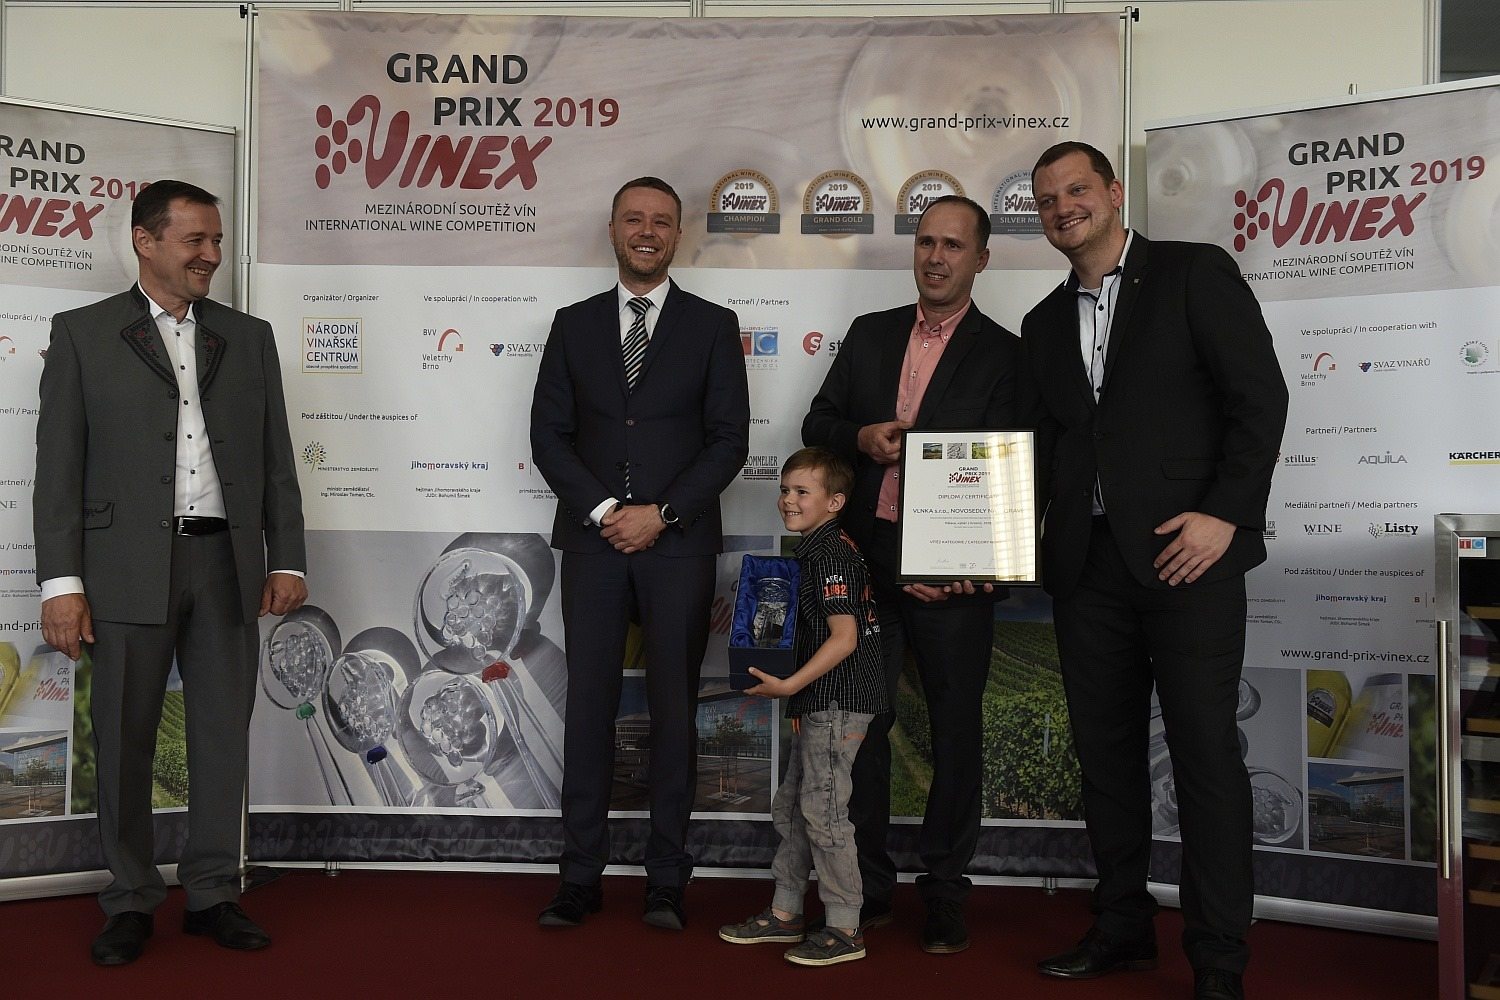 Mezinárodní soutěže vín GRAND PRIX VINEX